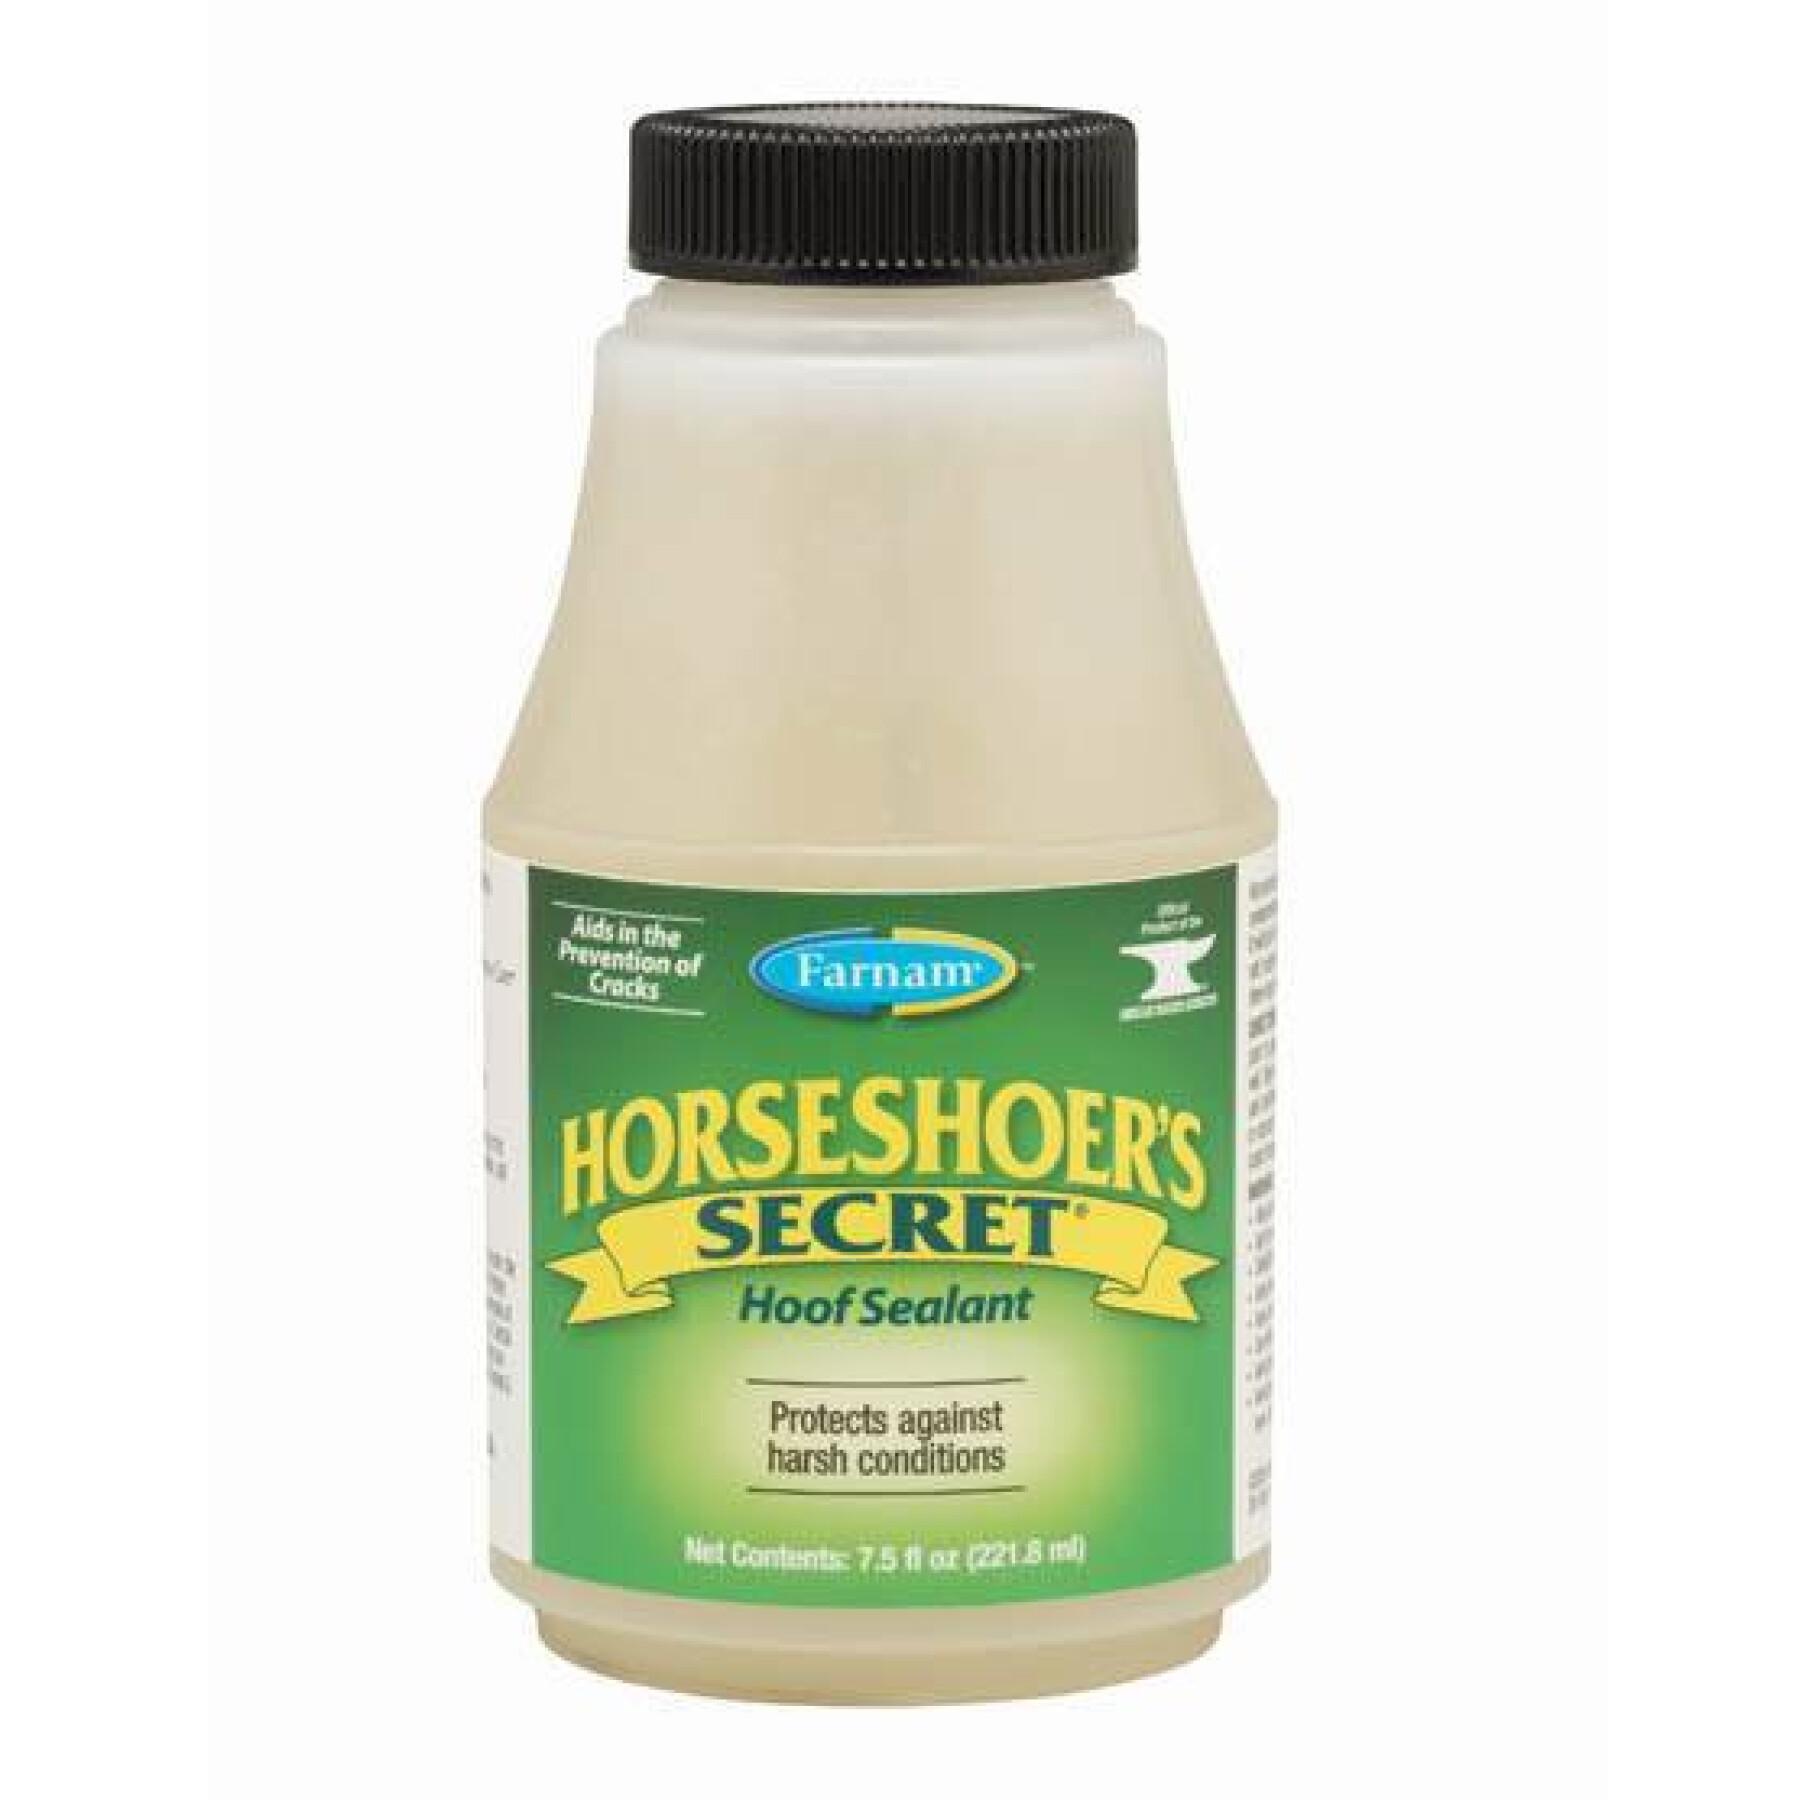 Hoefolie voor paarden Farnam Horseshoer'S Secret 218 ml